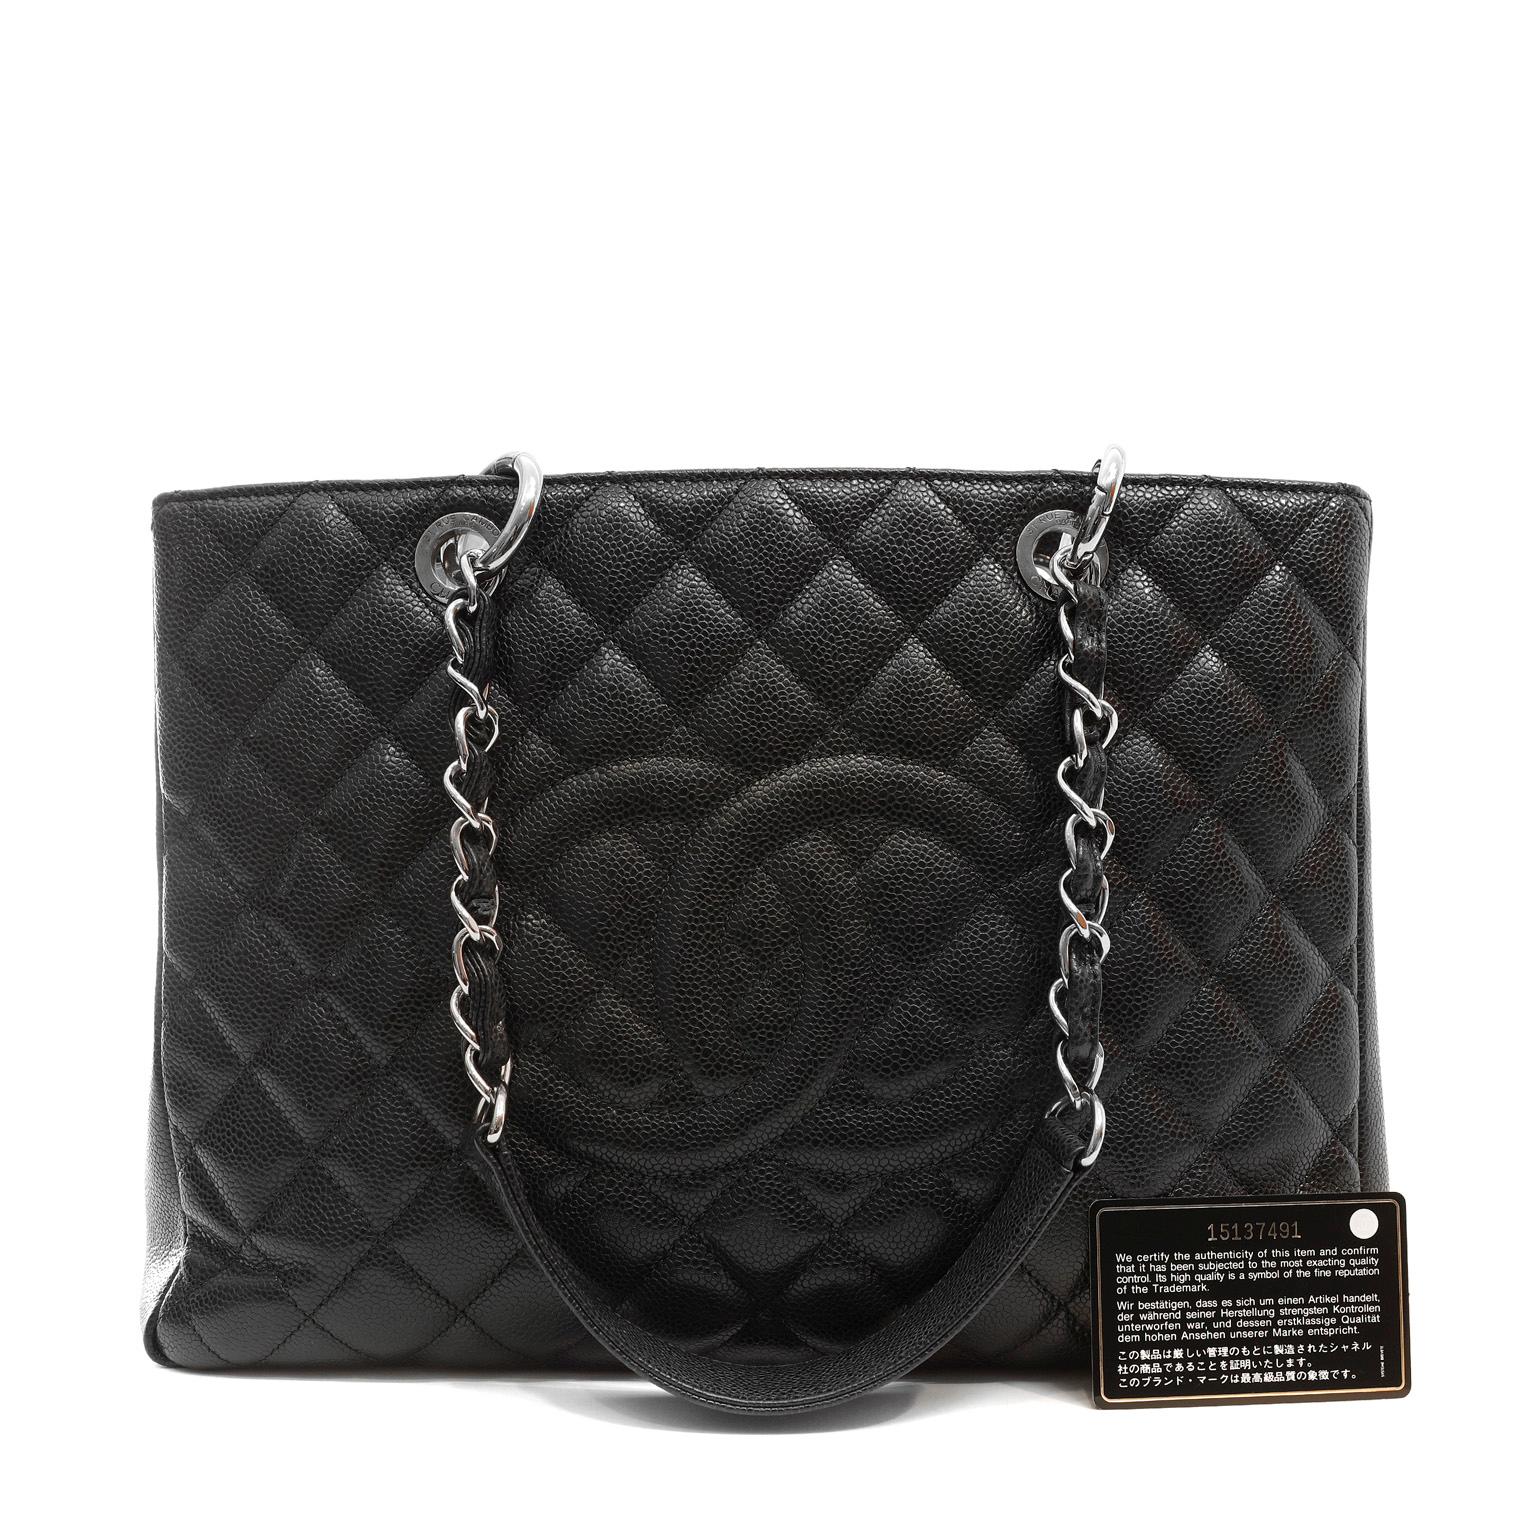 Women's Chanel Black Caviar GST Grand Shopper